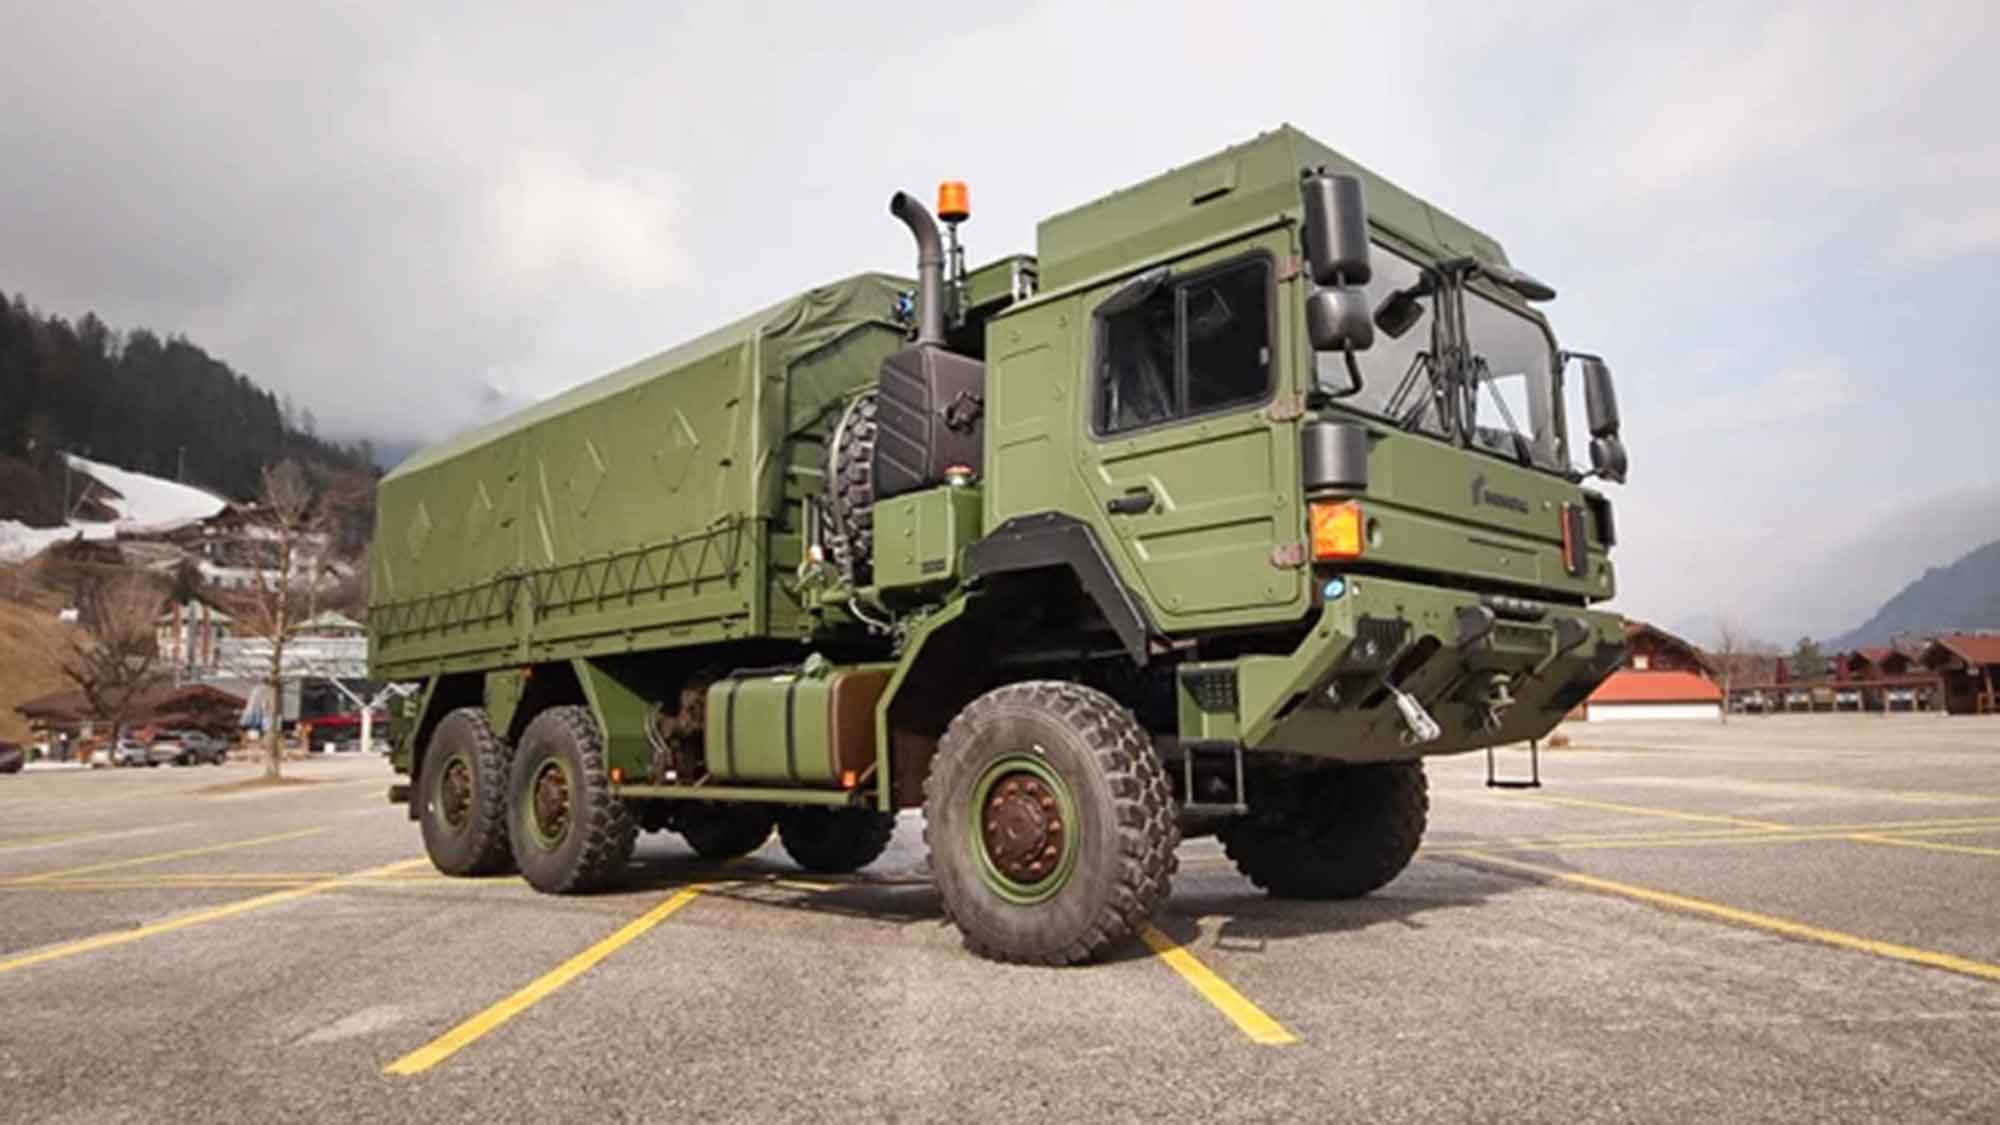 Folgeauftrag für Rheinmetall aus Wien: Bundesheer beschafft weitere Logistikfahrzeuge – möglicher Auftragswert über 300 Millionen Euro